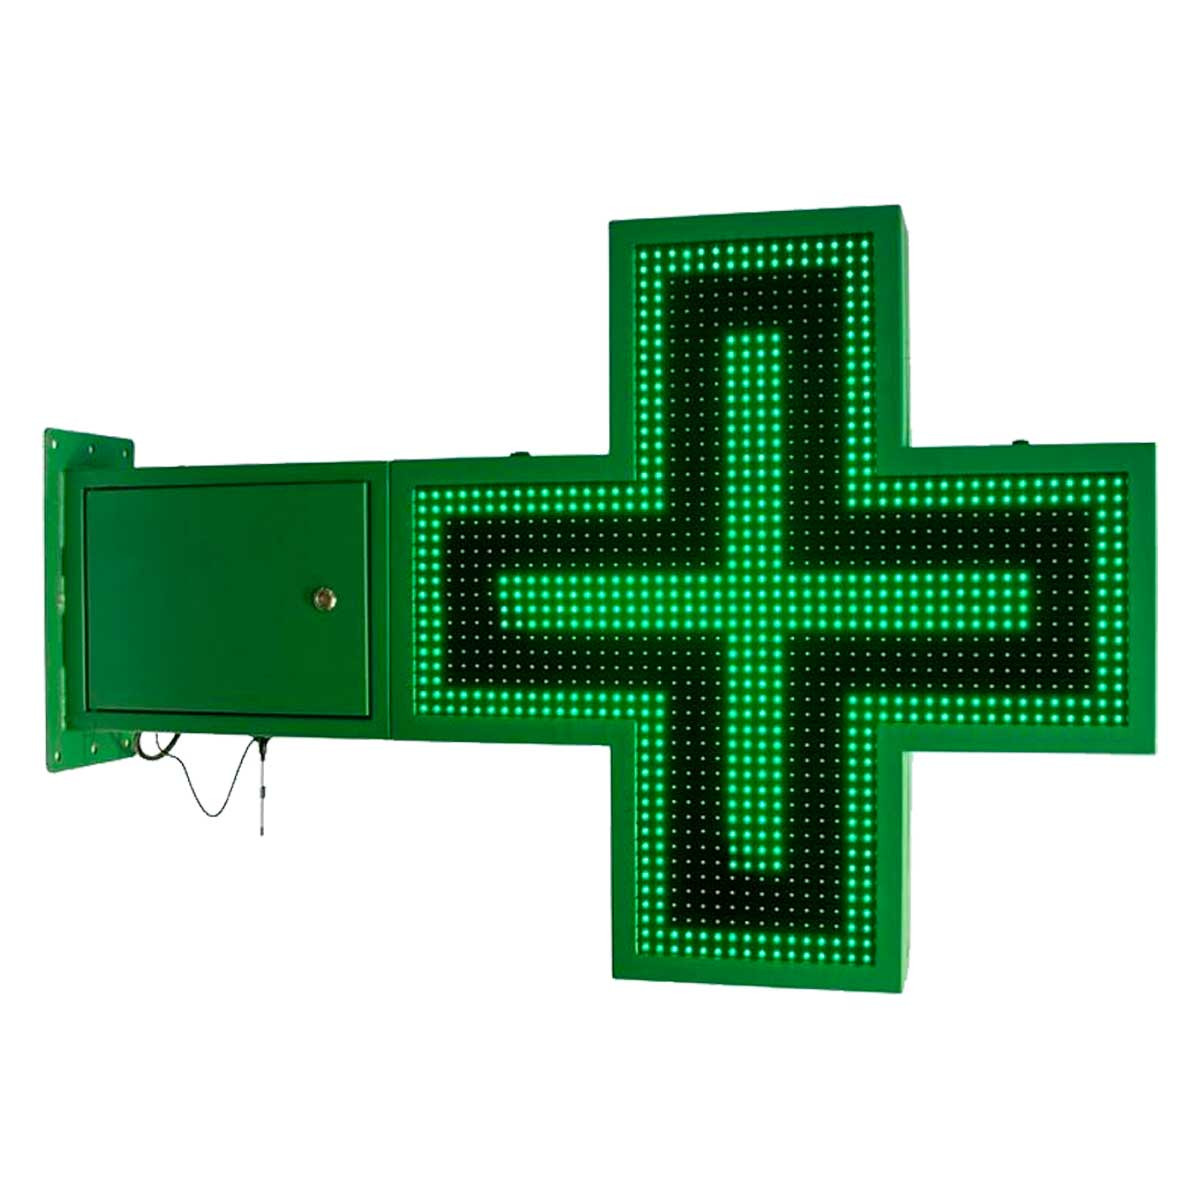 Croce LED farmacia monocolore verde programmabile P16 - Esterno